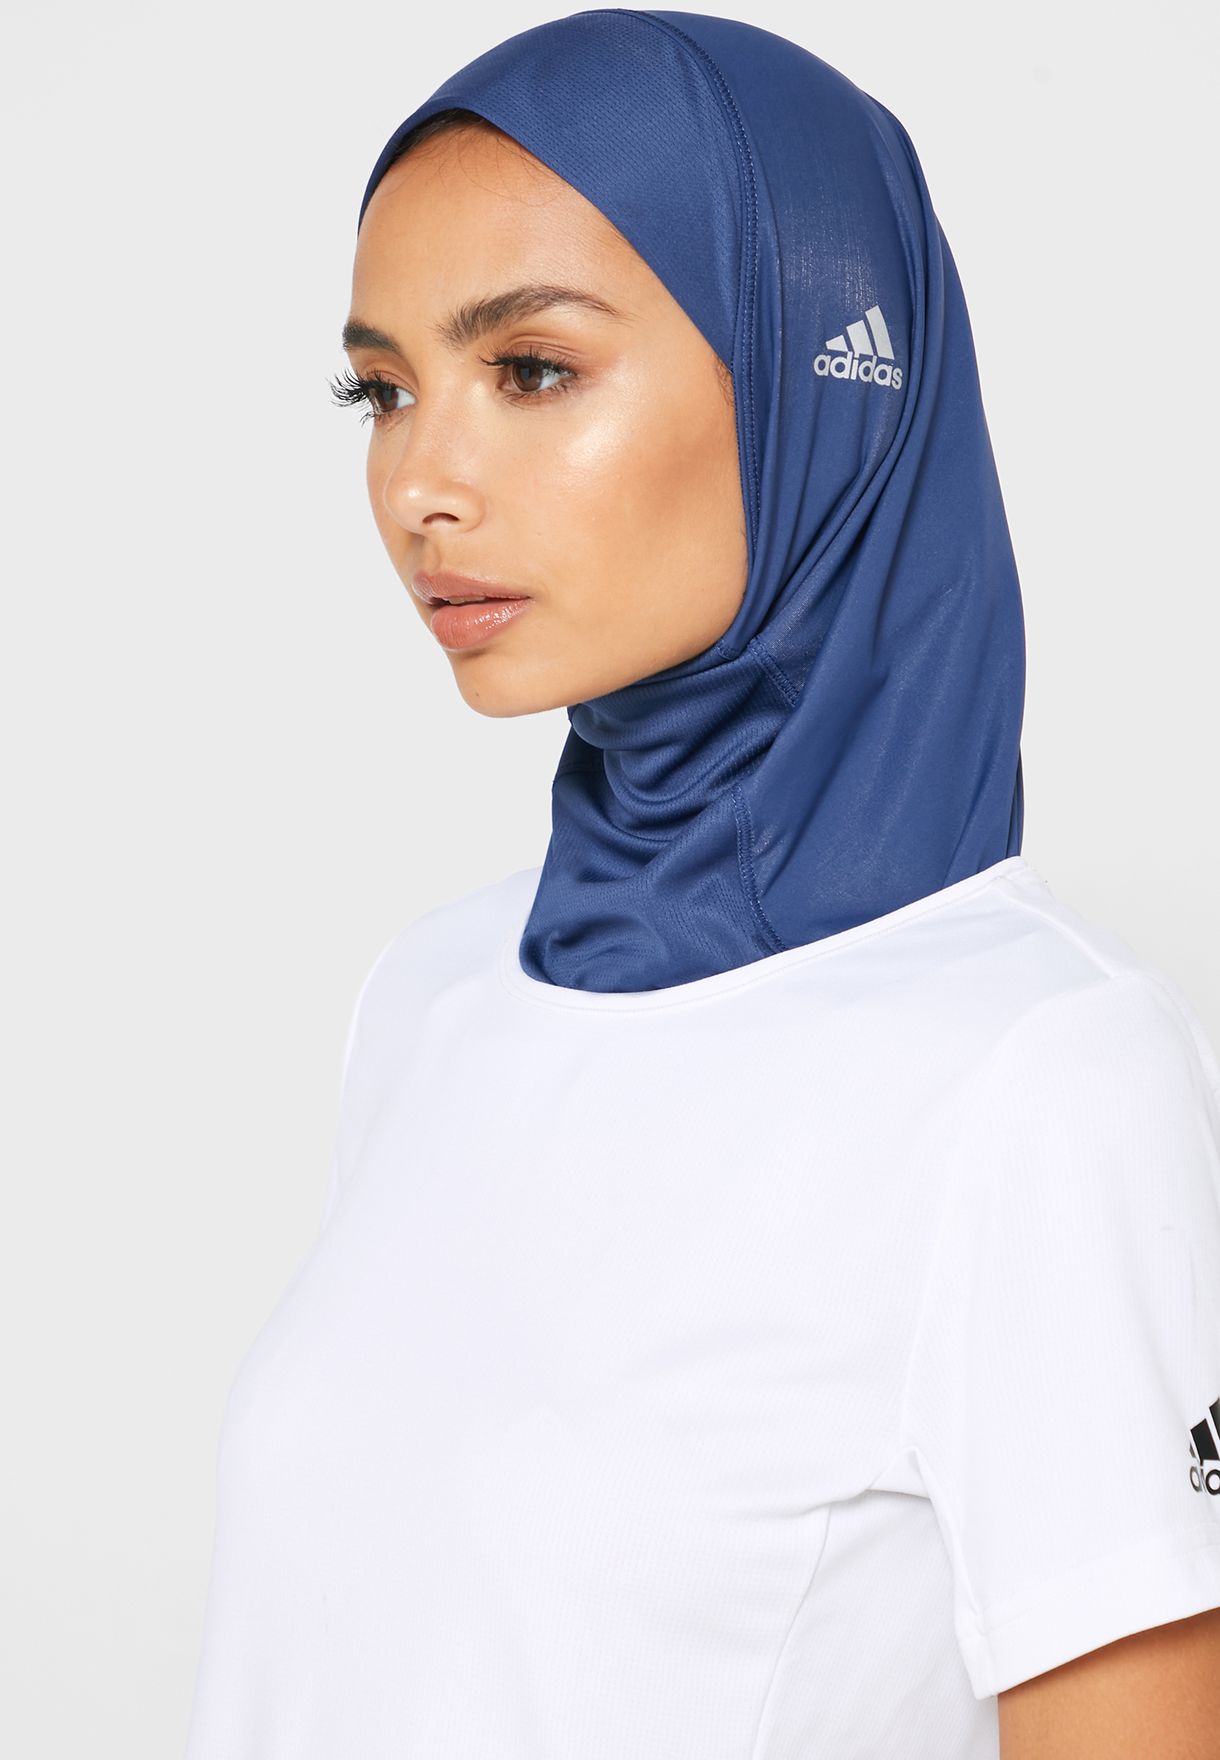 Buy Adidas Navy Training Hijab For Women In Dubai Abu Dhabi